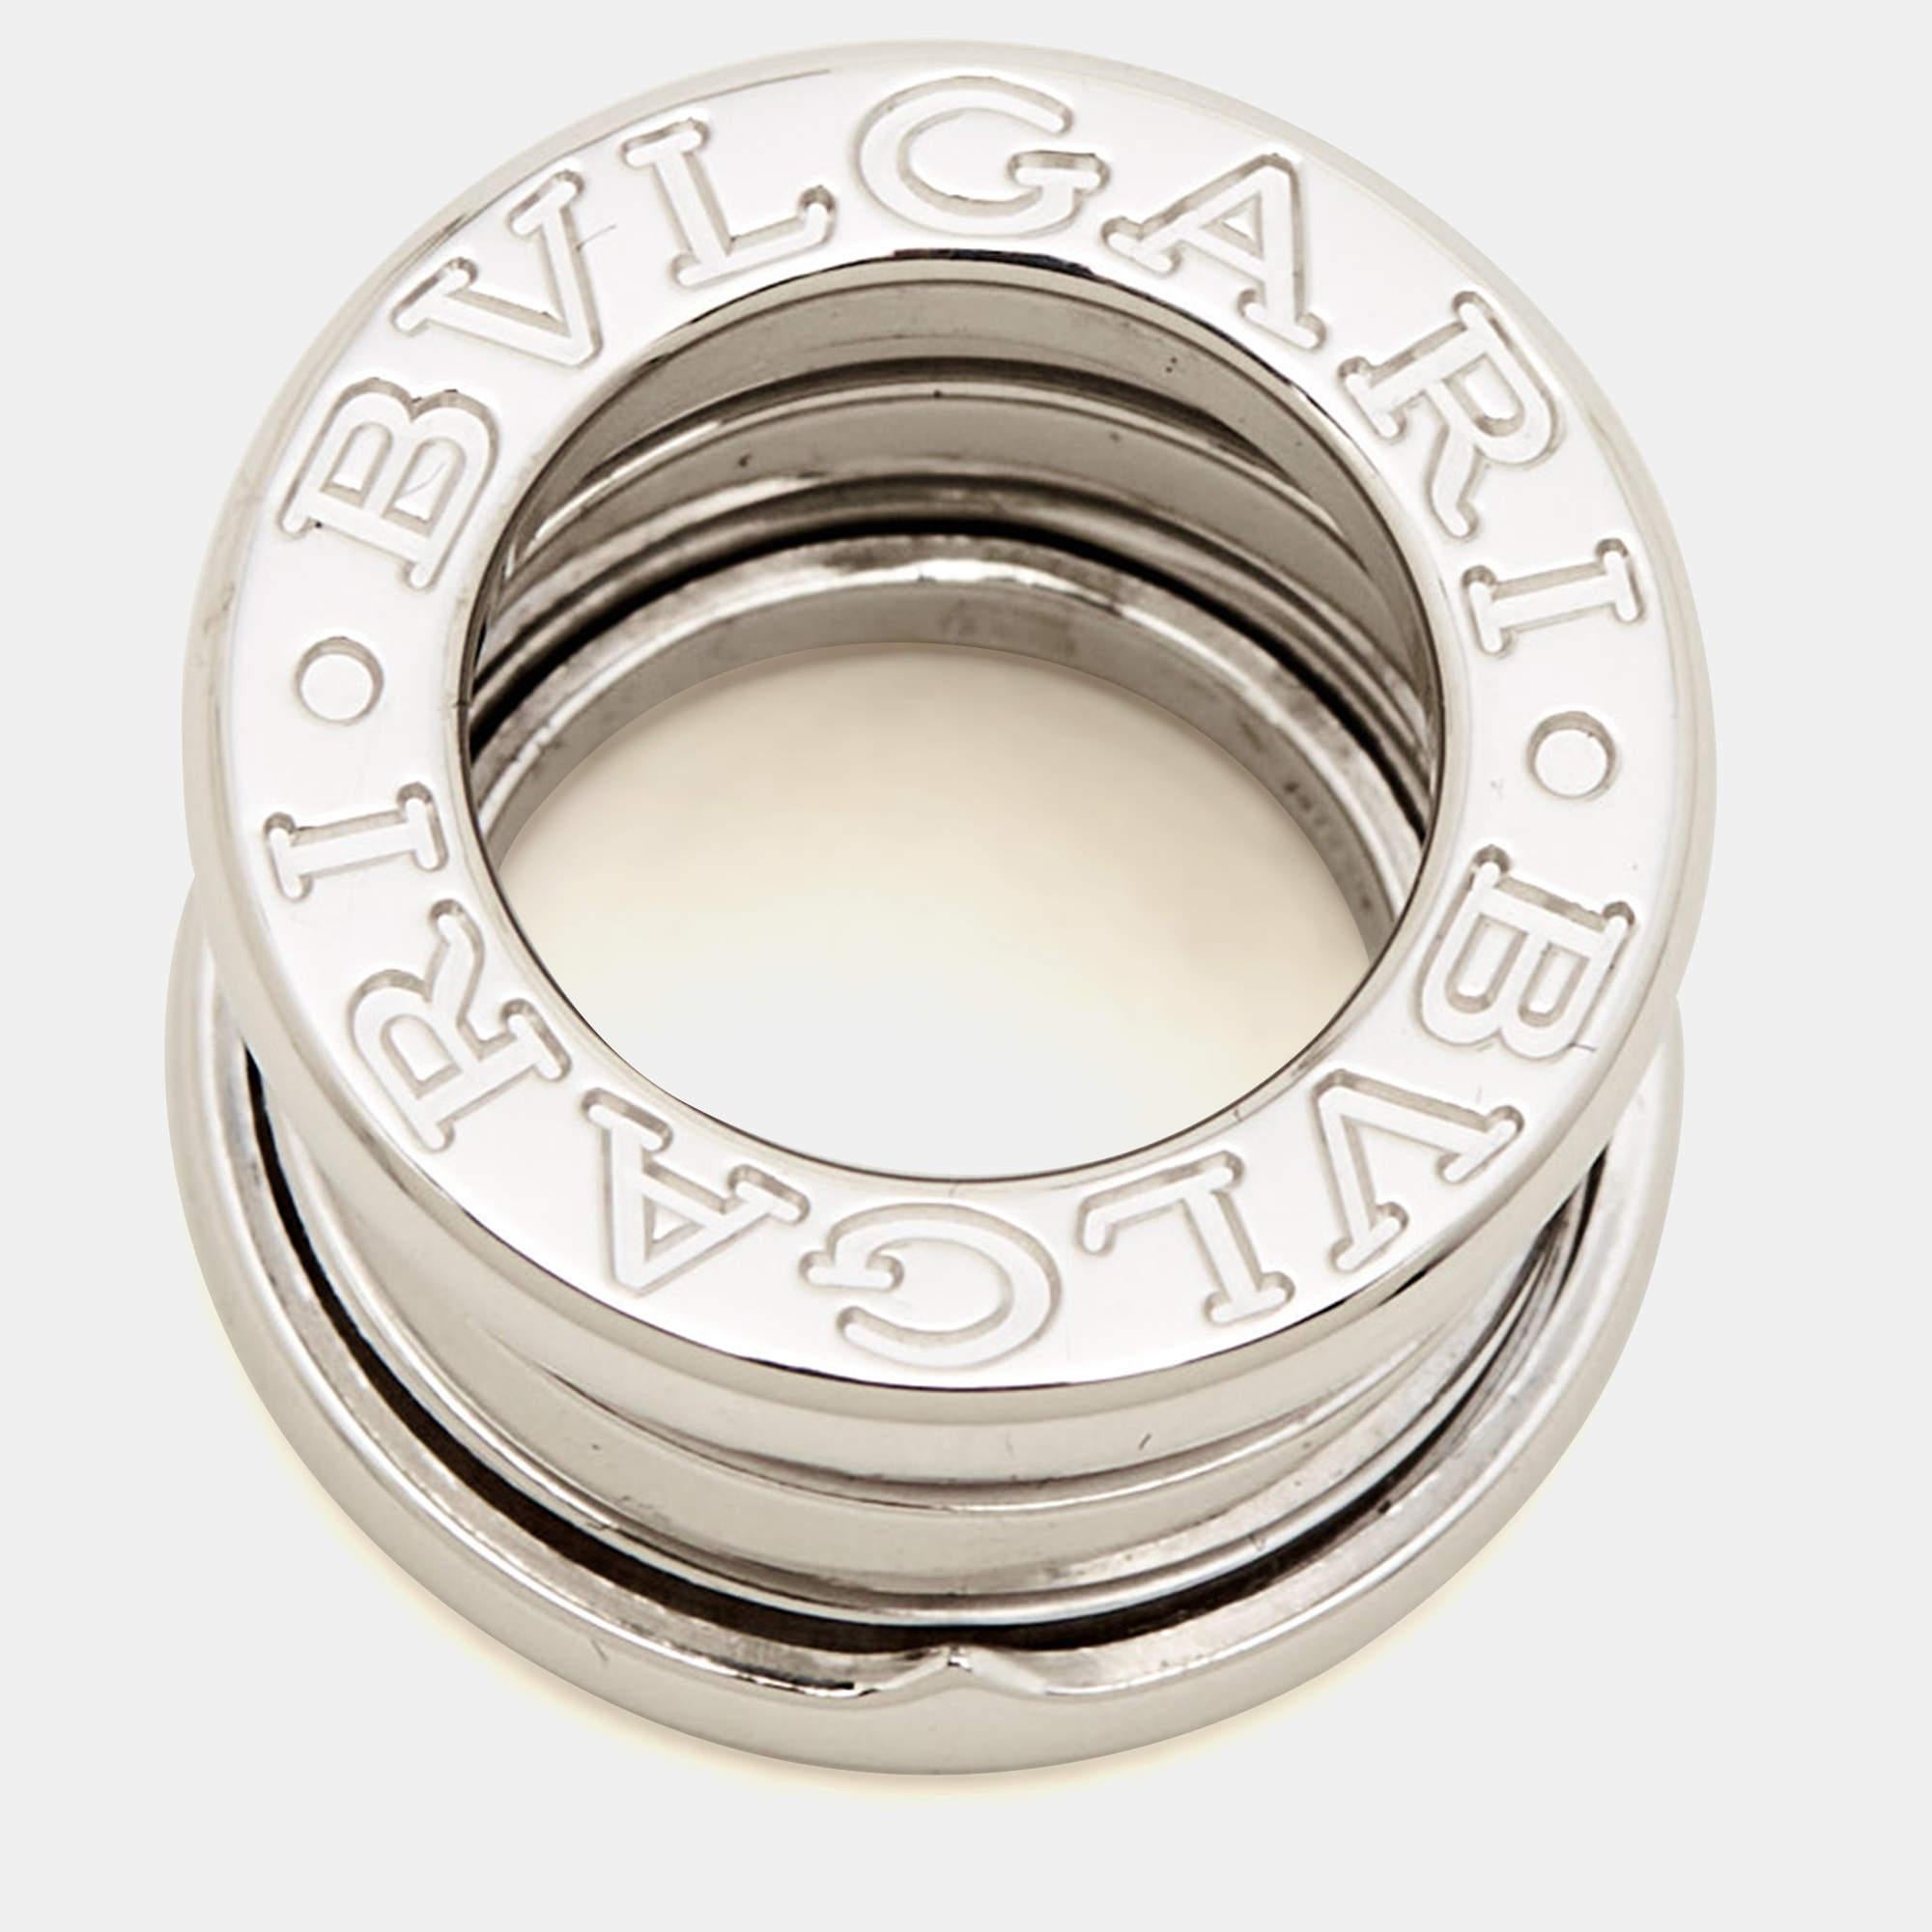 bvlgari ring silver 925